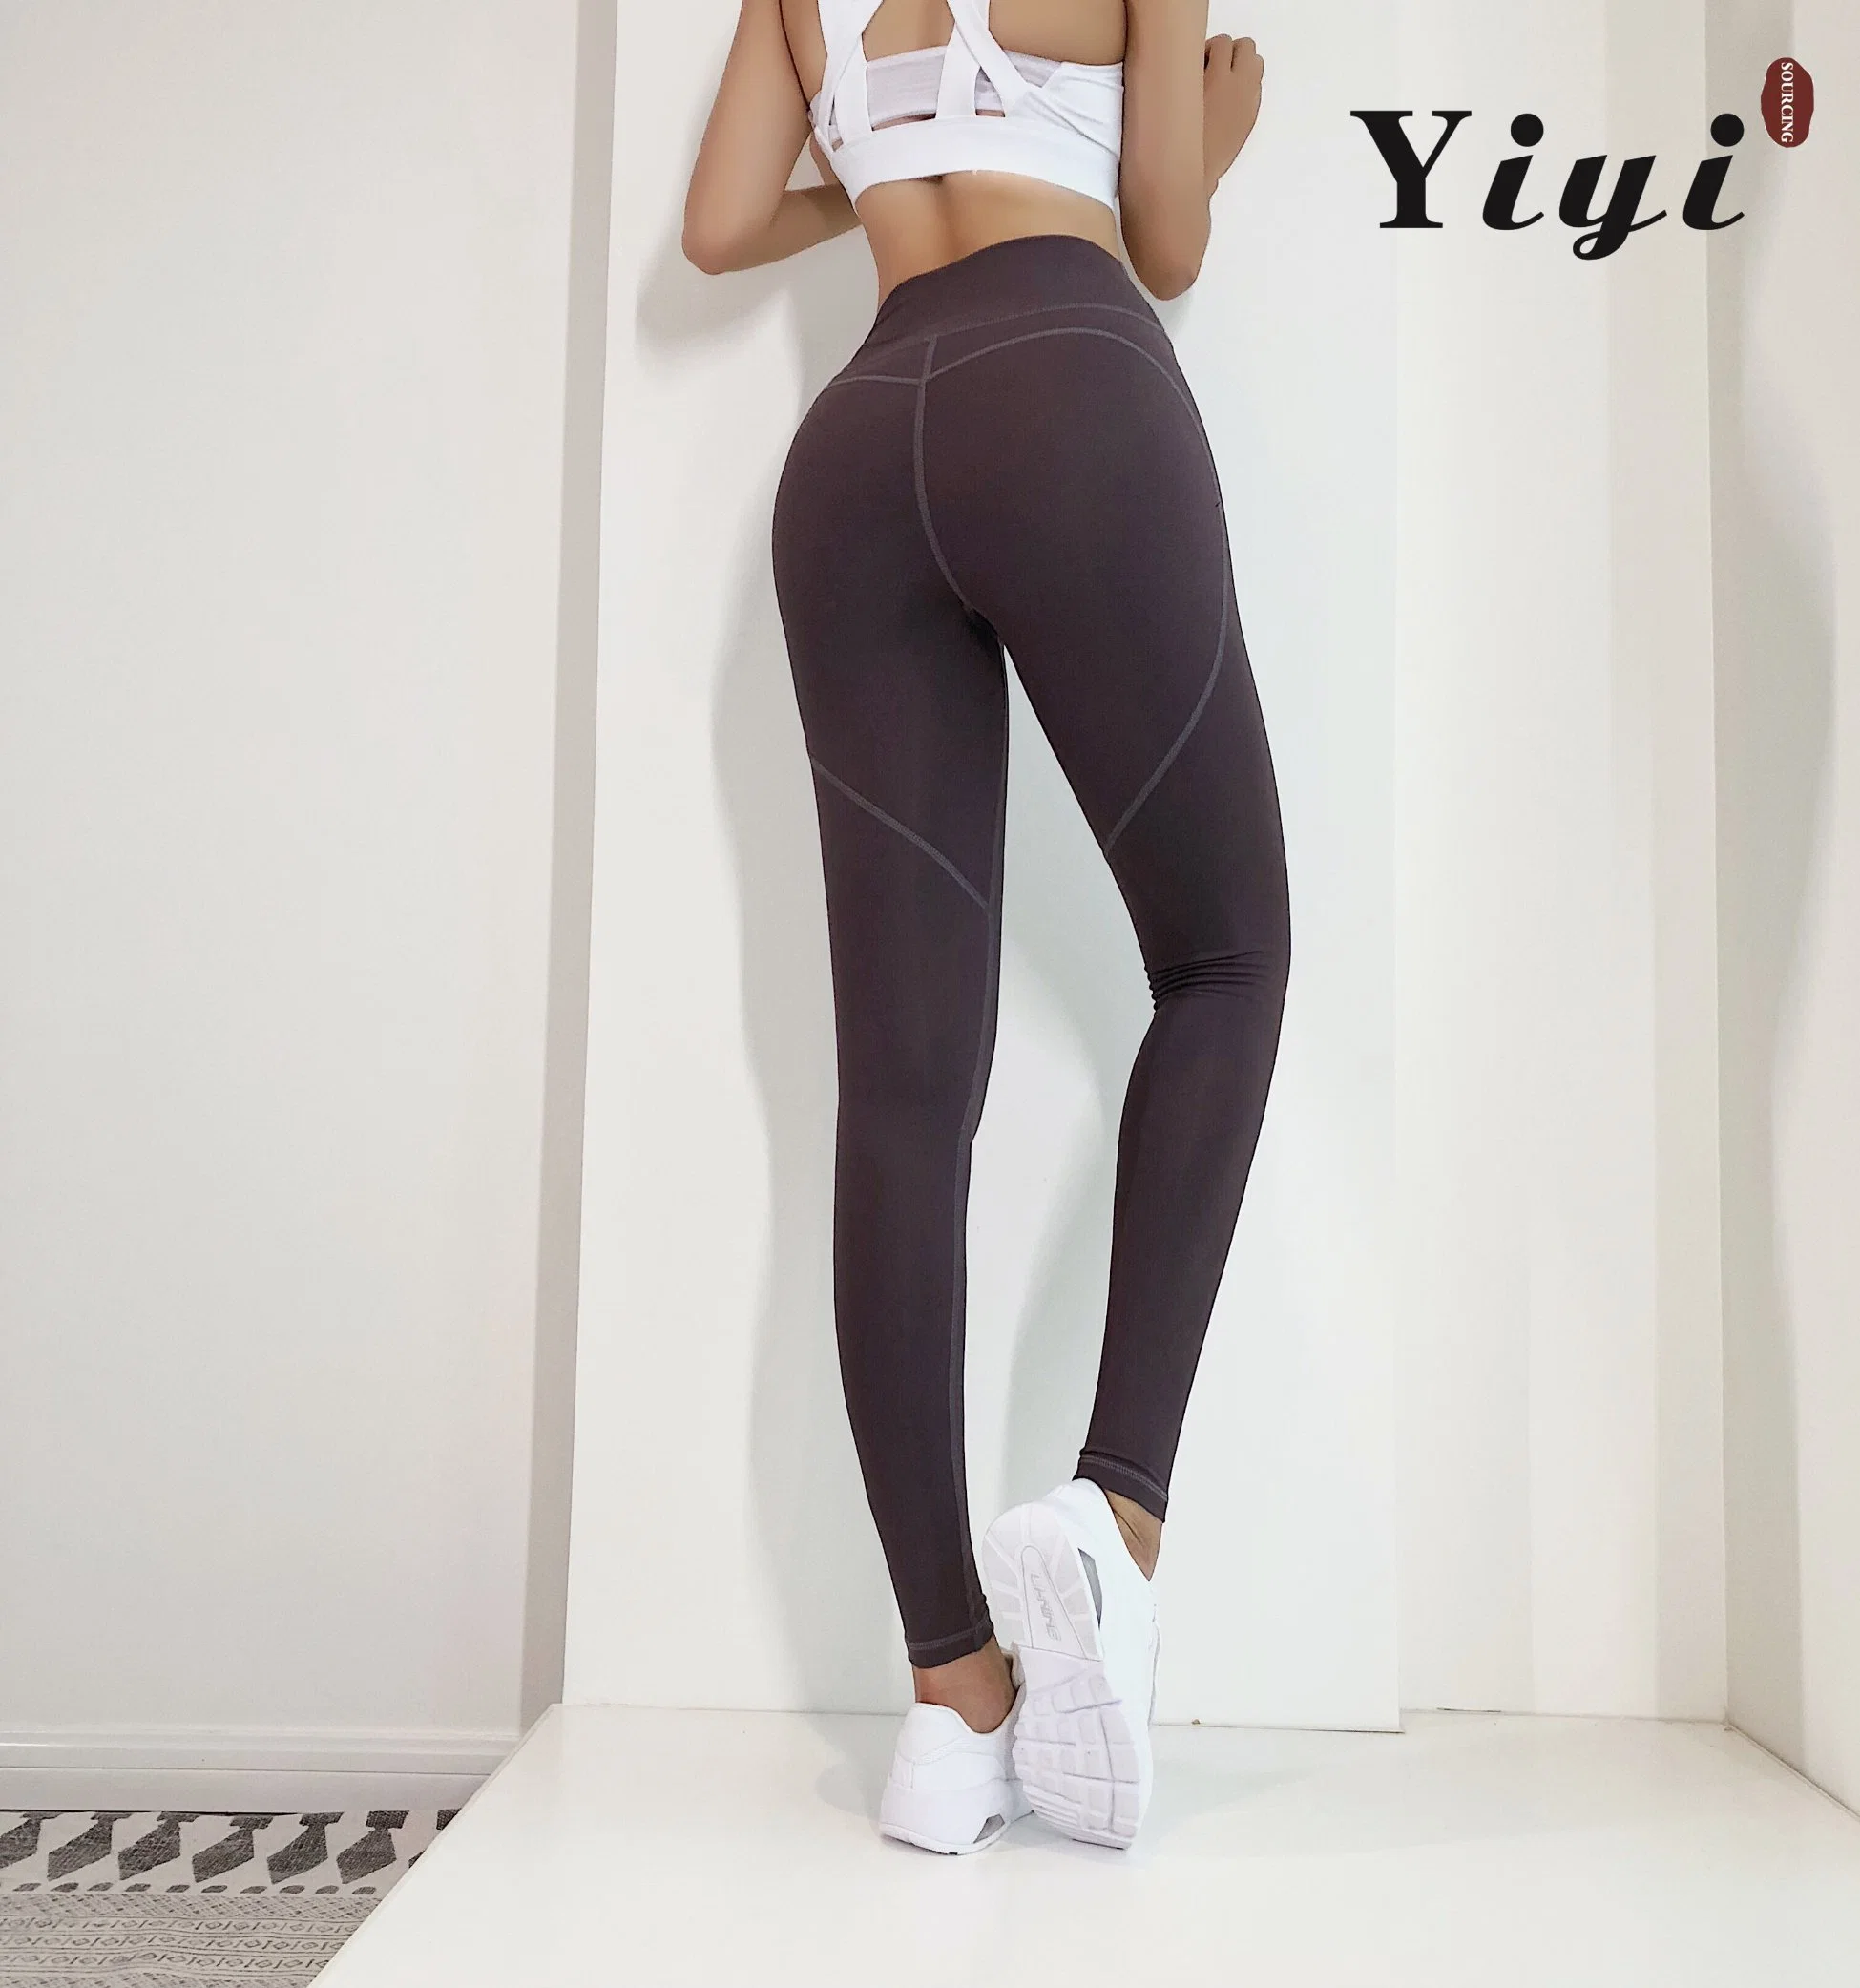 Custom Logo Women Seamless Butt Lifting Sport Running Workout Gym Fitness High Waist Trainer Yoga Pants